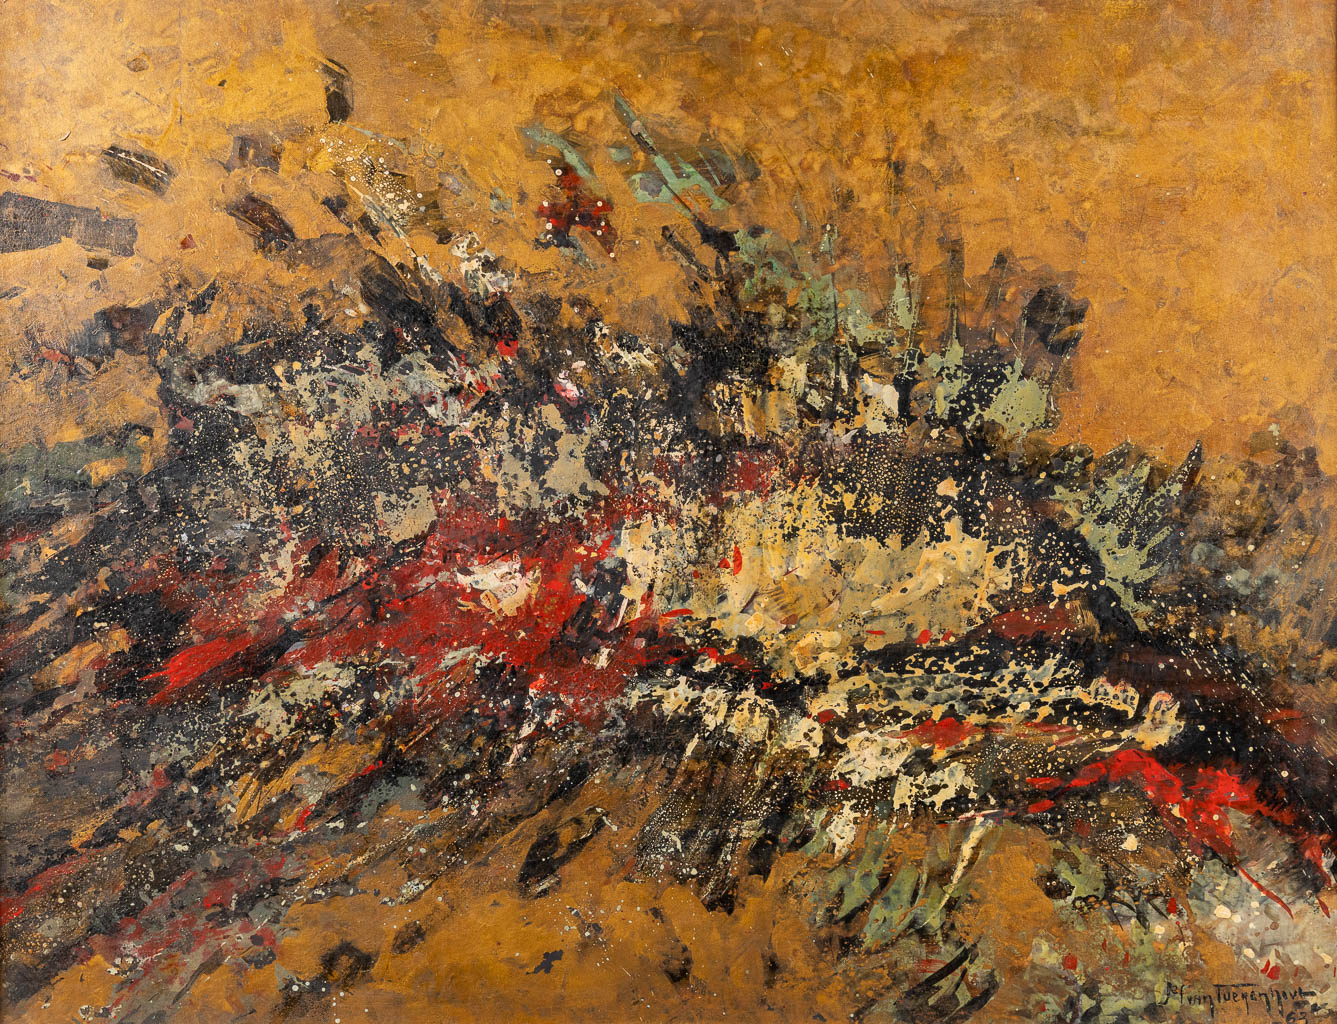 Jef VAN TUERENHOUT (1926-2006) 'Abstract' oil on board, 1963. (W:73 x H:56 cm)